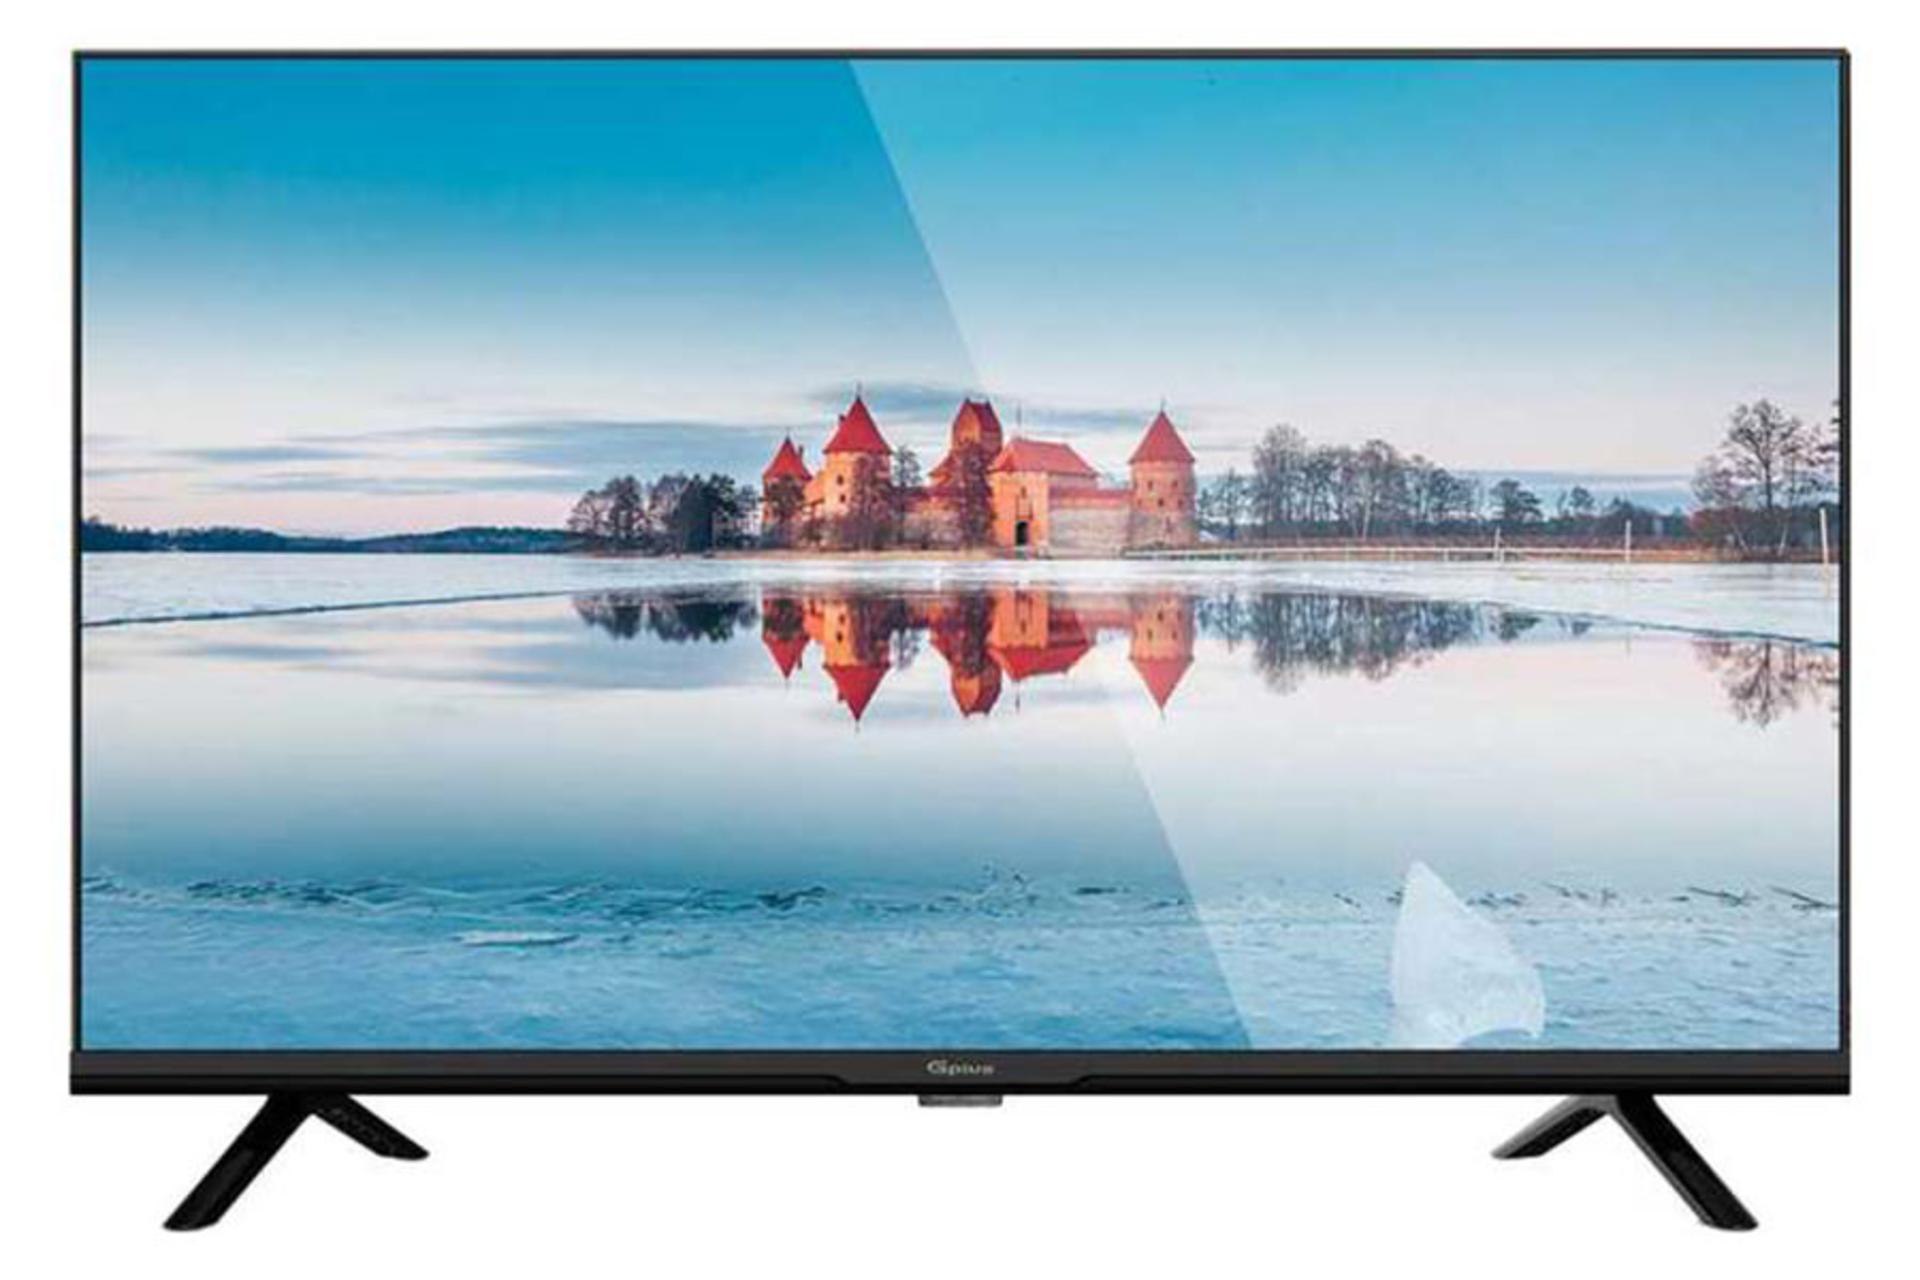 قیمت تلویزیون جی پلاس PH618N مدل 43 اینچ + مشخصات